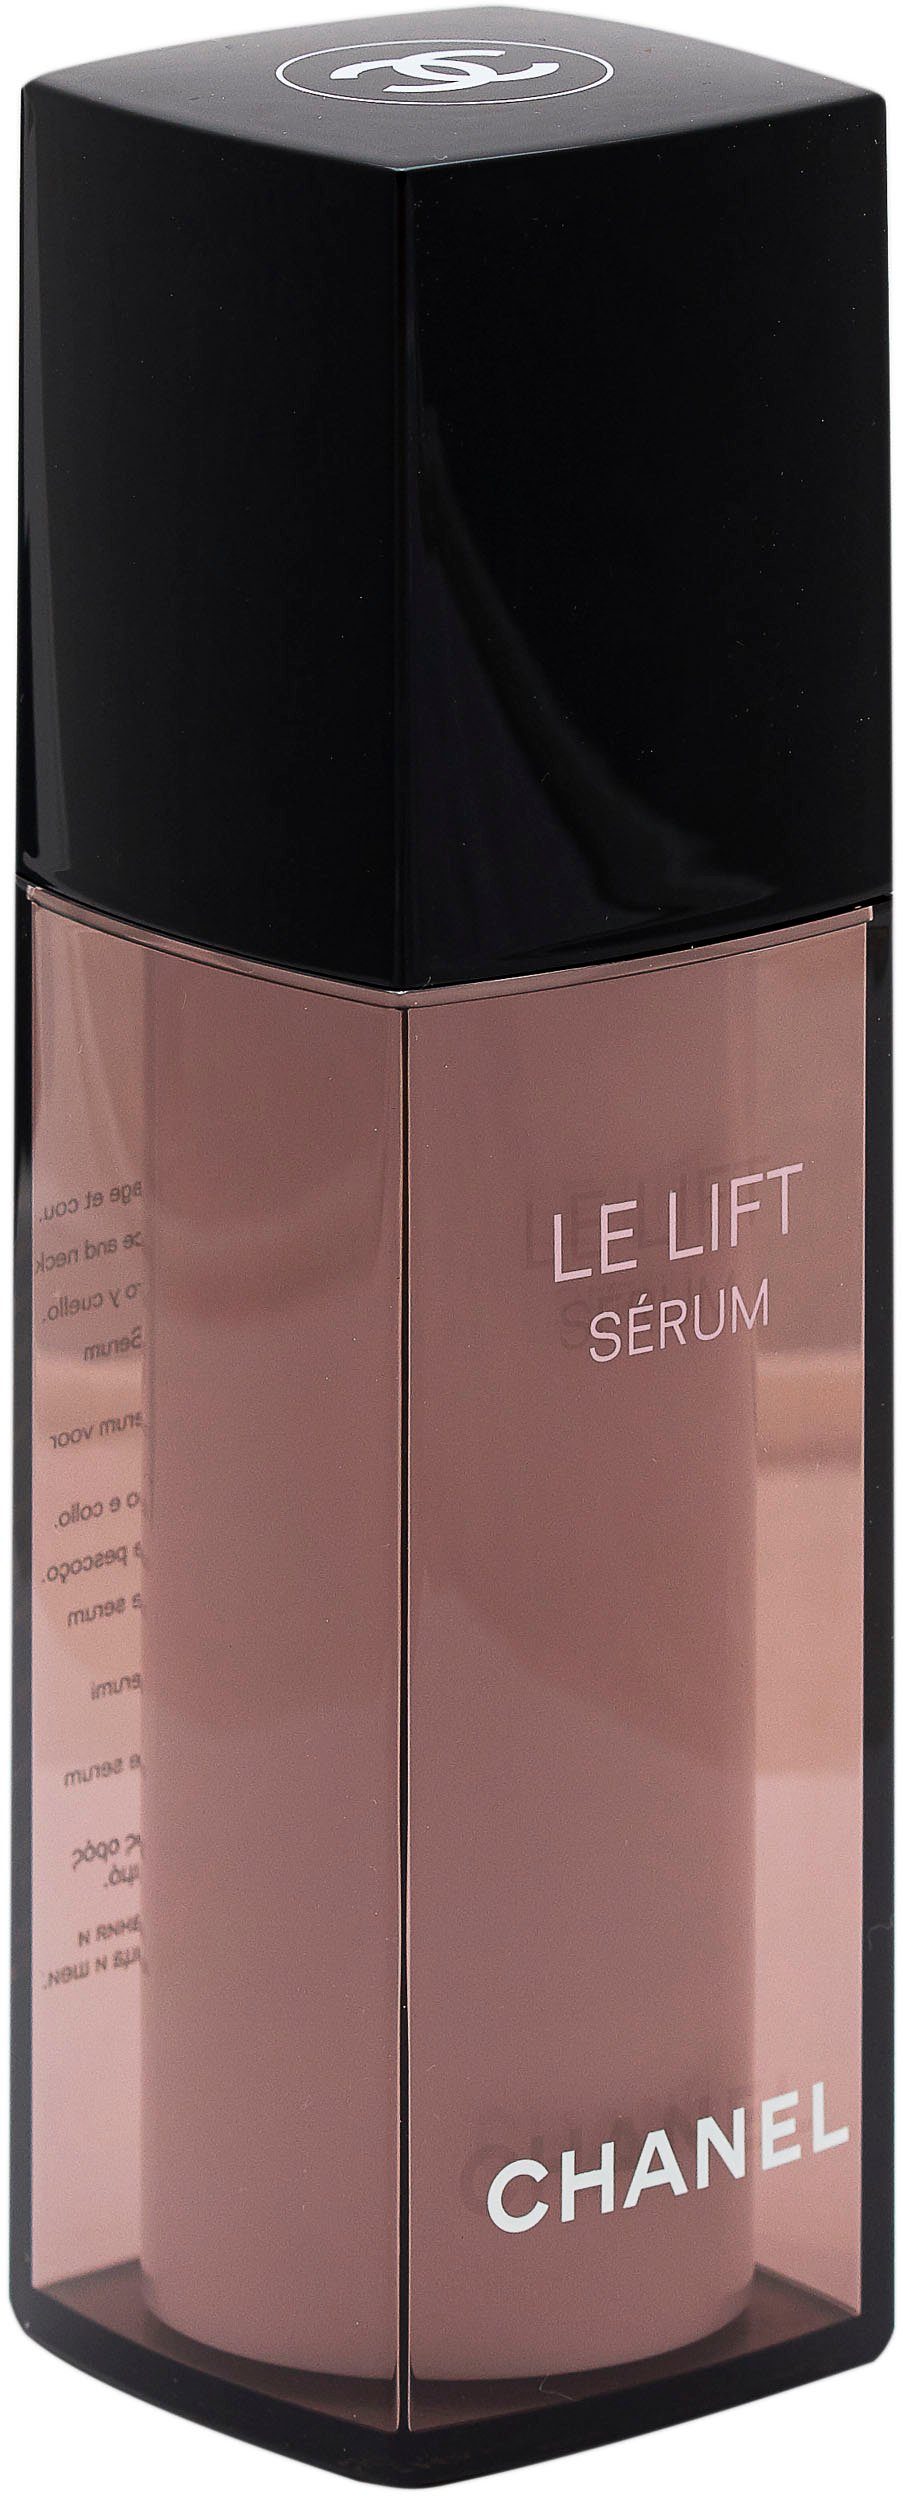 Chanel Lift Lisse-Raffermint Serum Le Gesichtsserum CHANEL